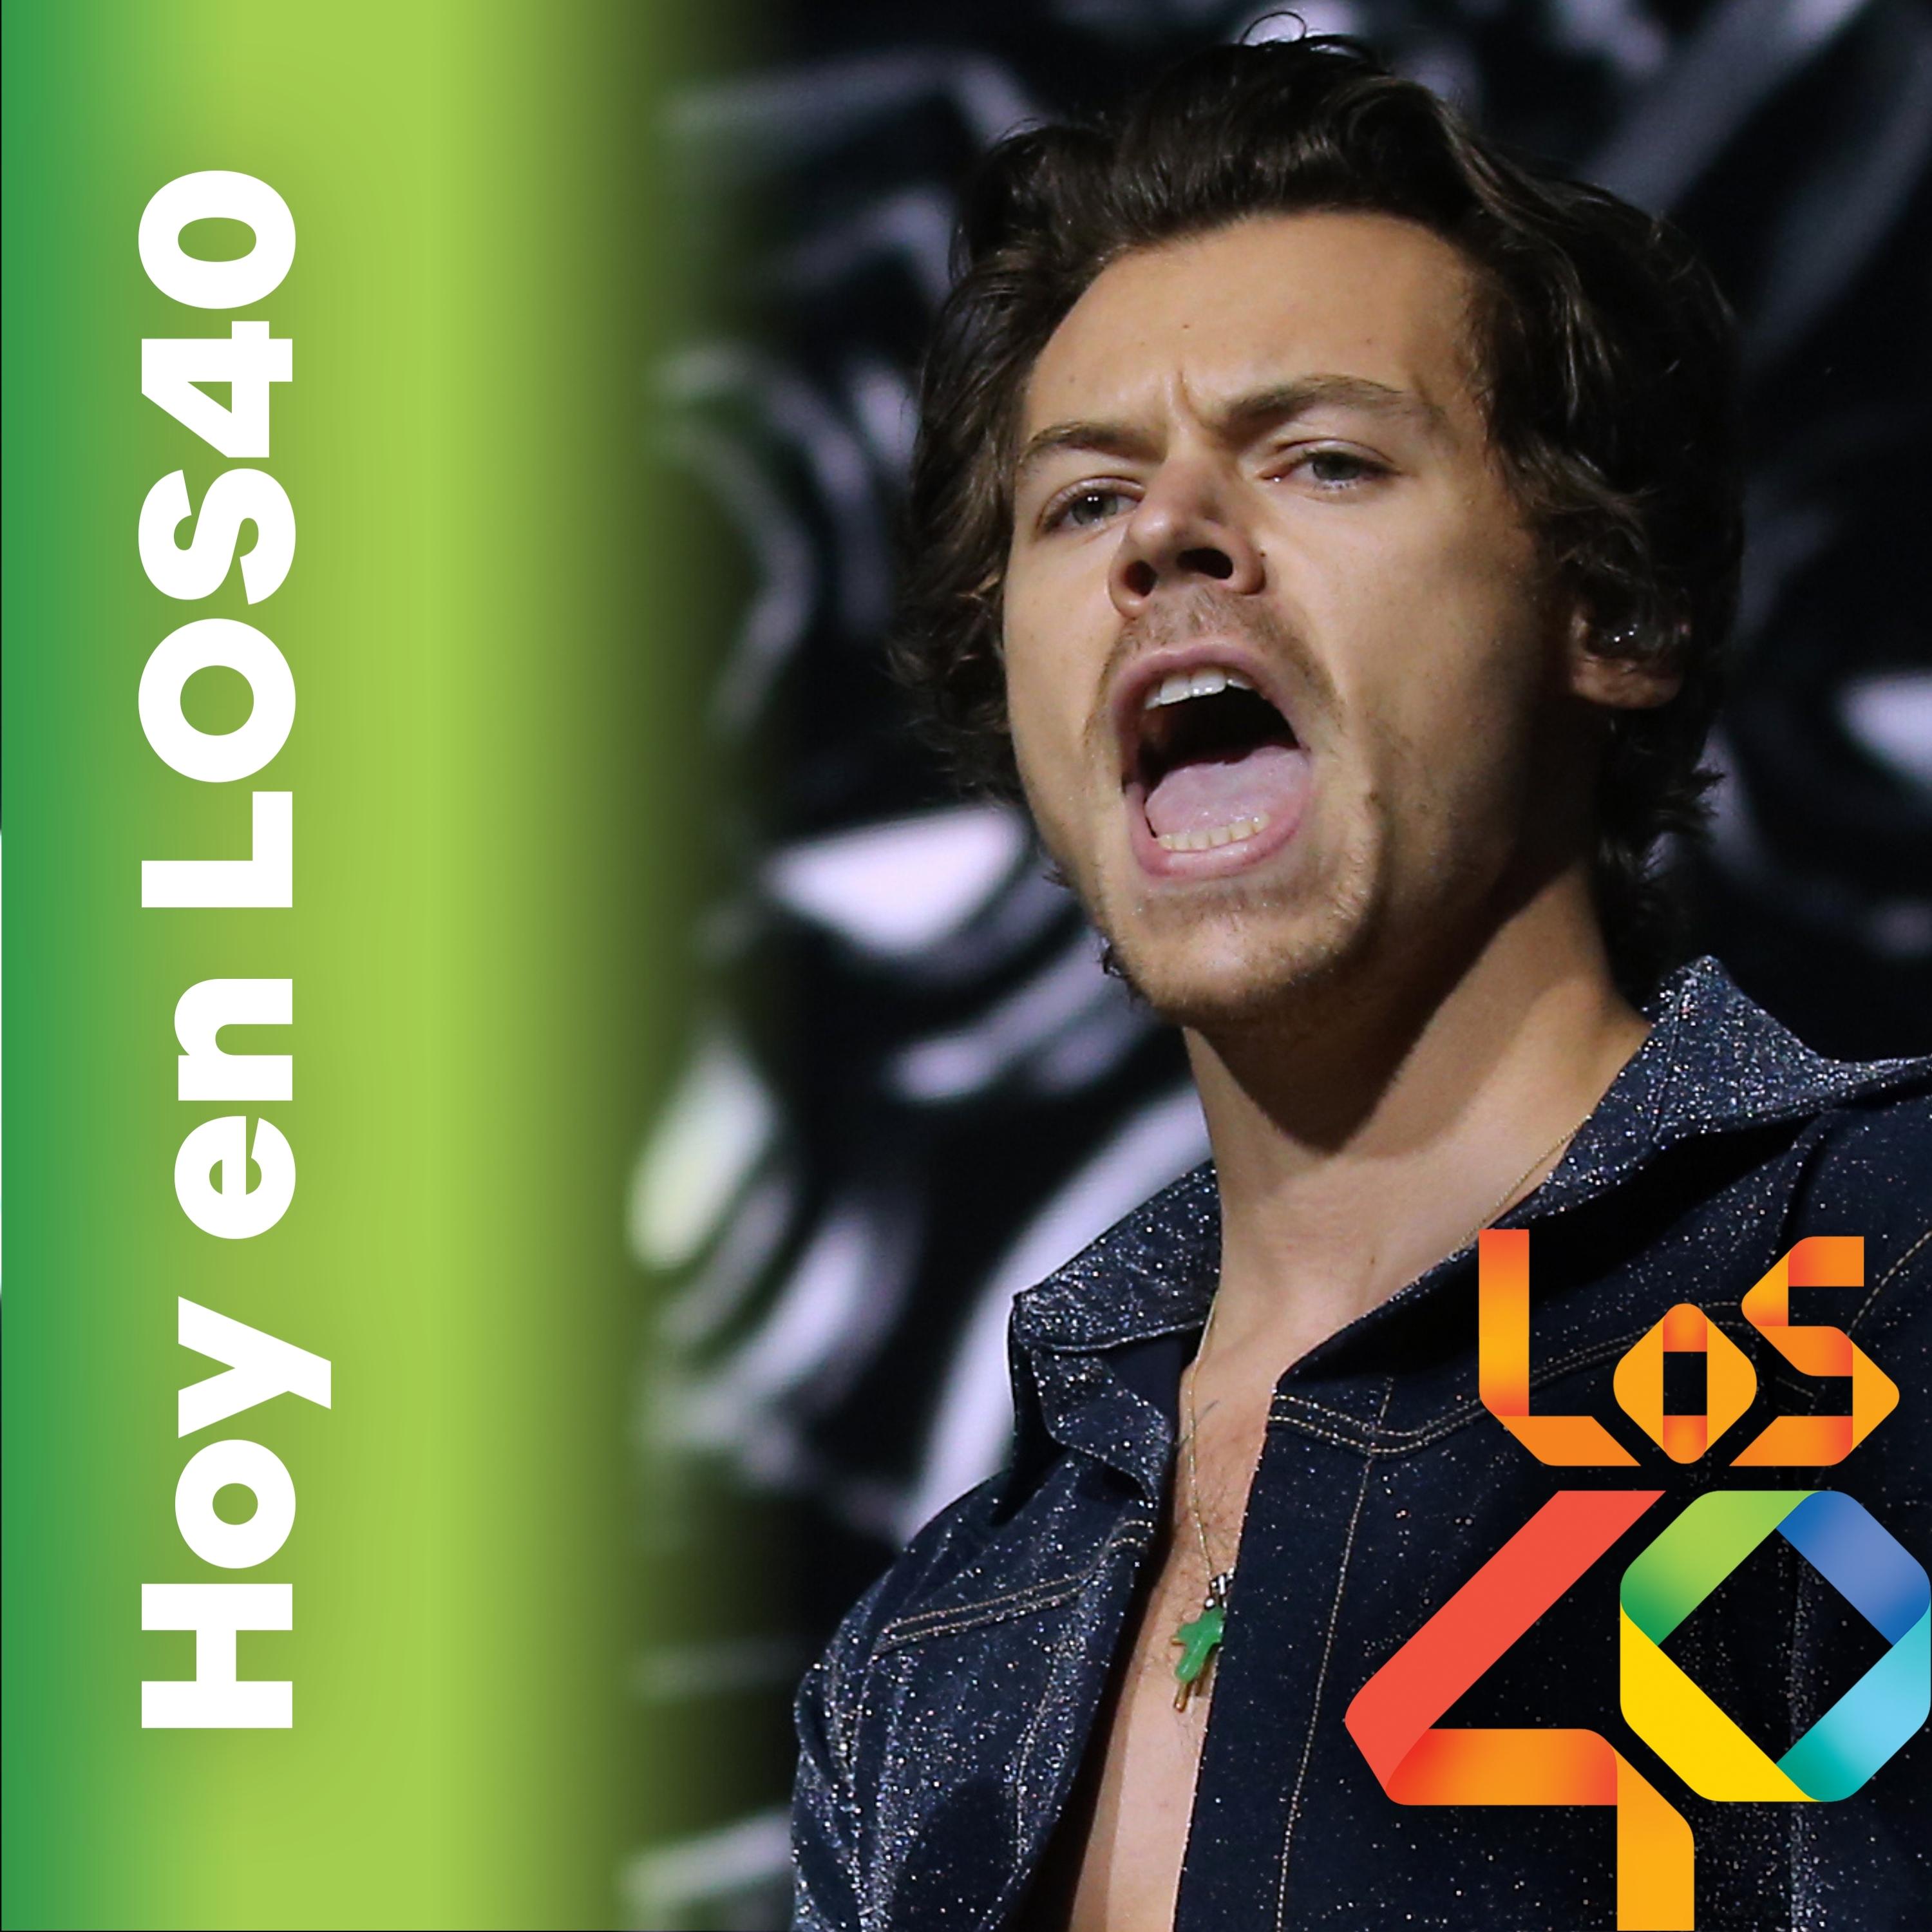 La visita a España de Harry Styles – Noticias del 20 de enero de 2021 – HOY EN LOS40